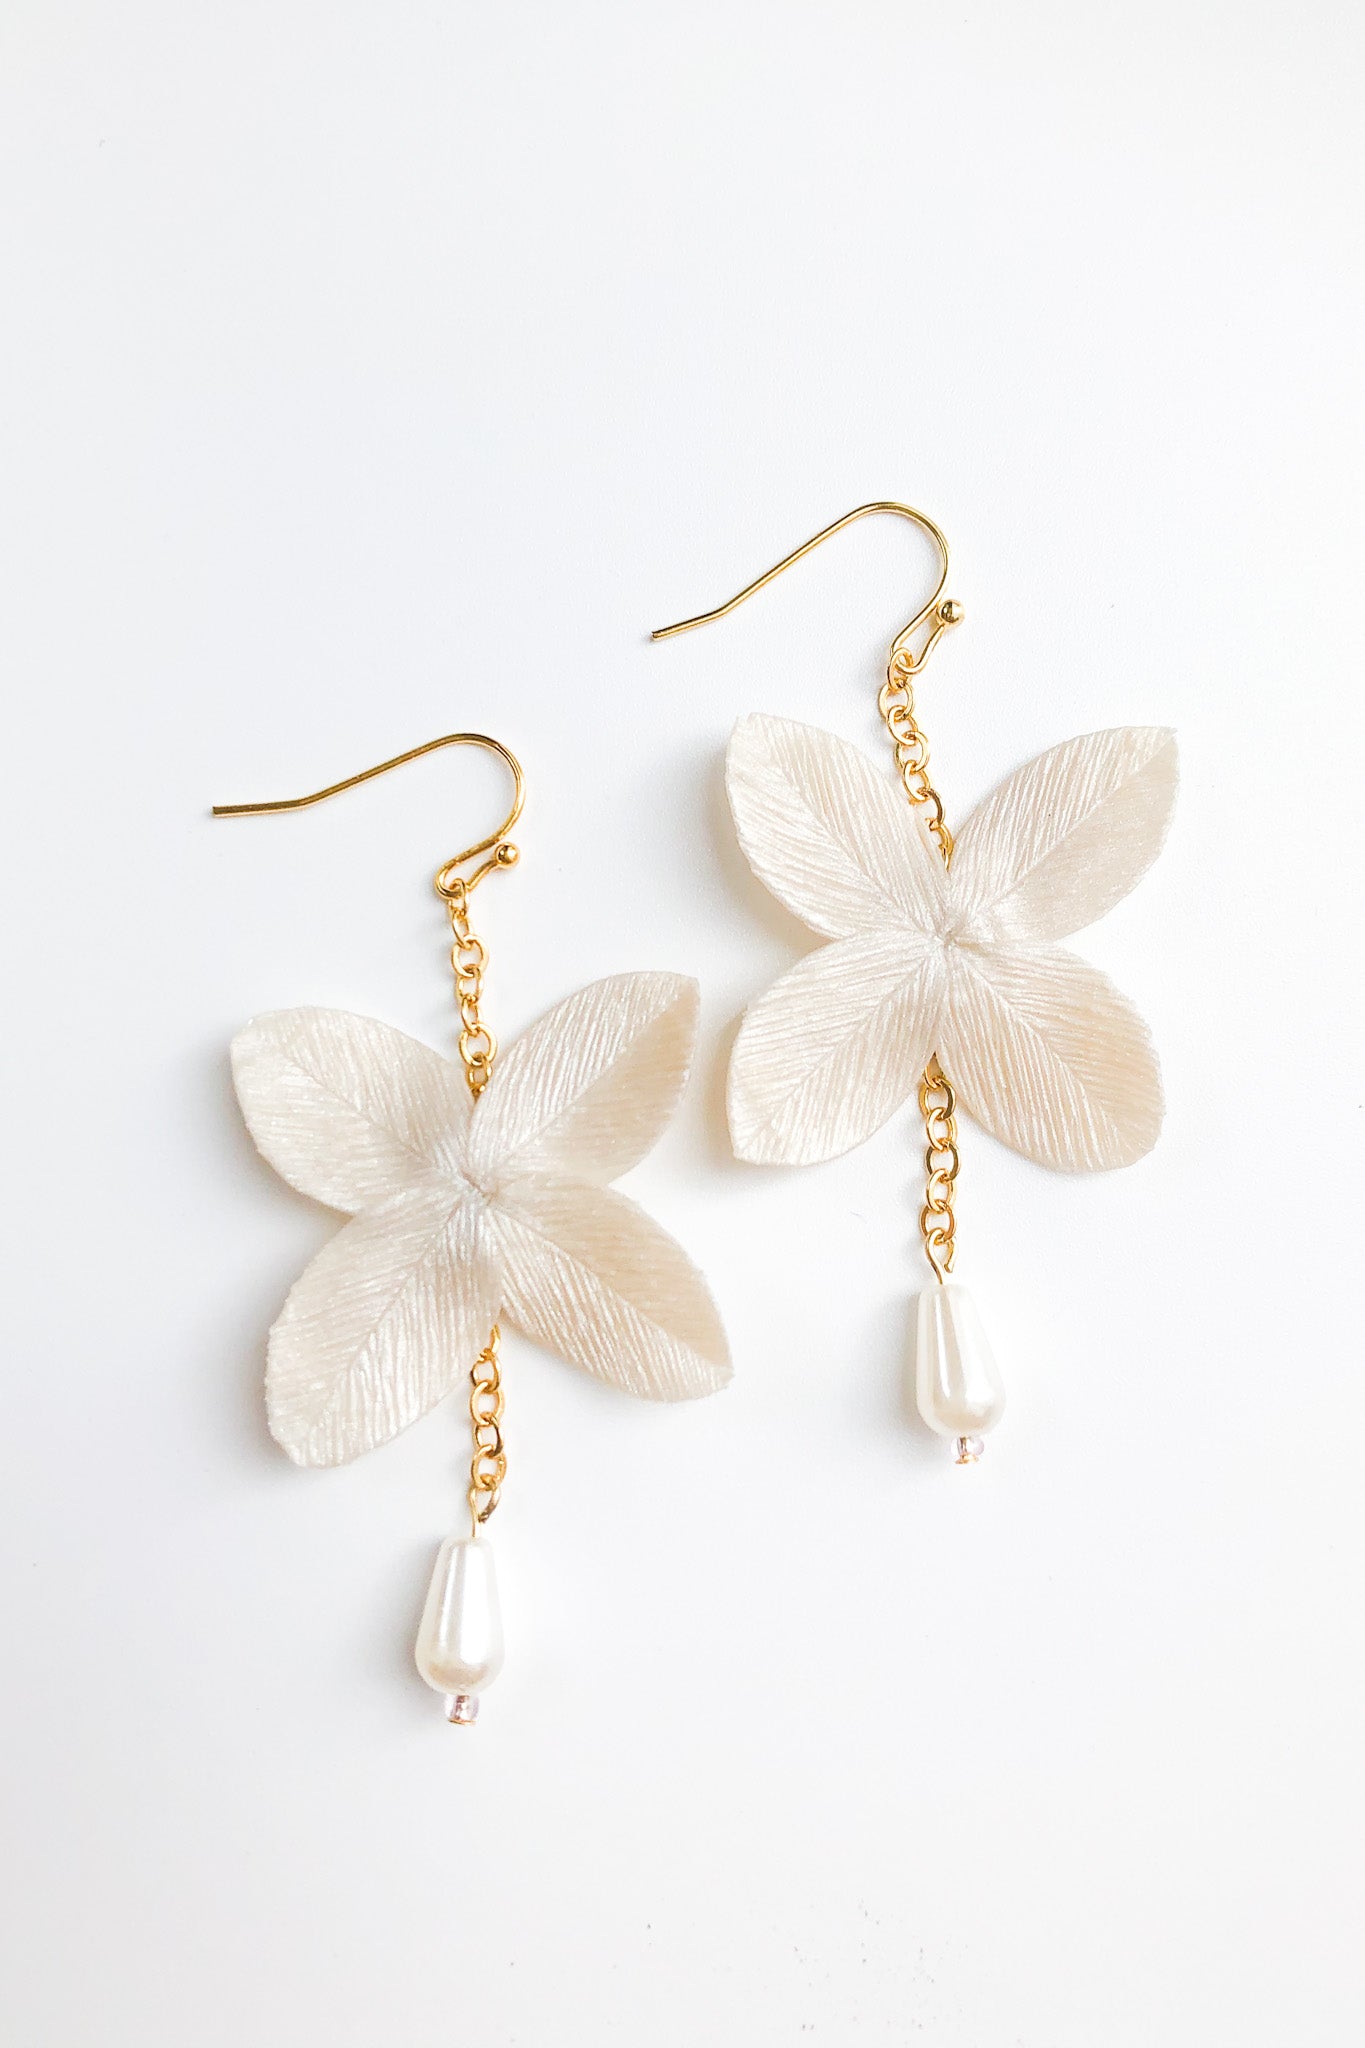 Delicate Leaf Petals Handmade Earrings